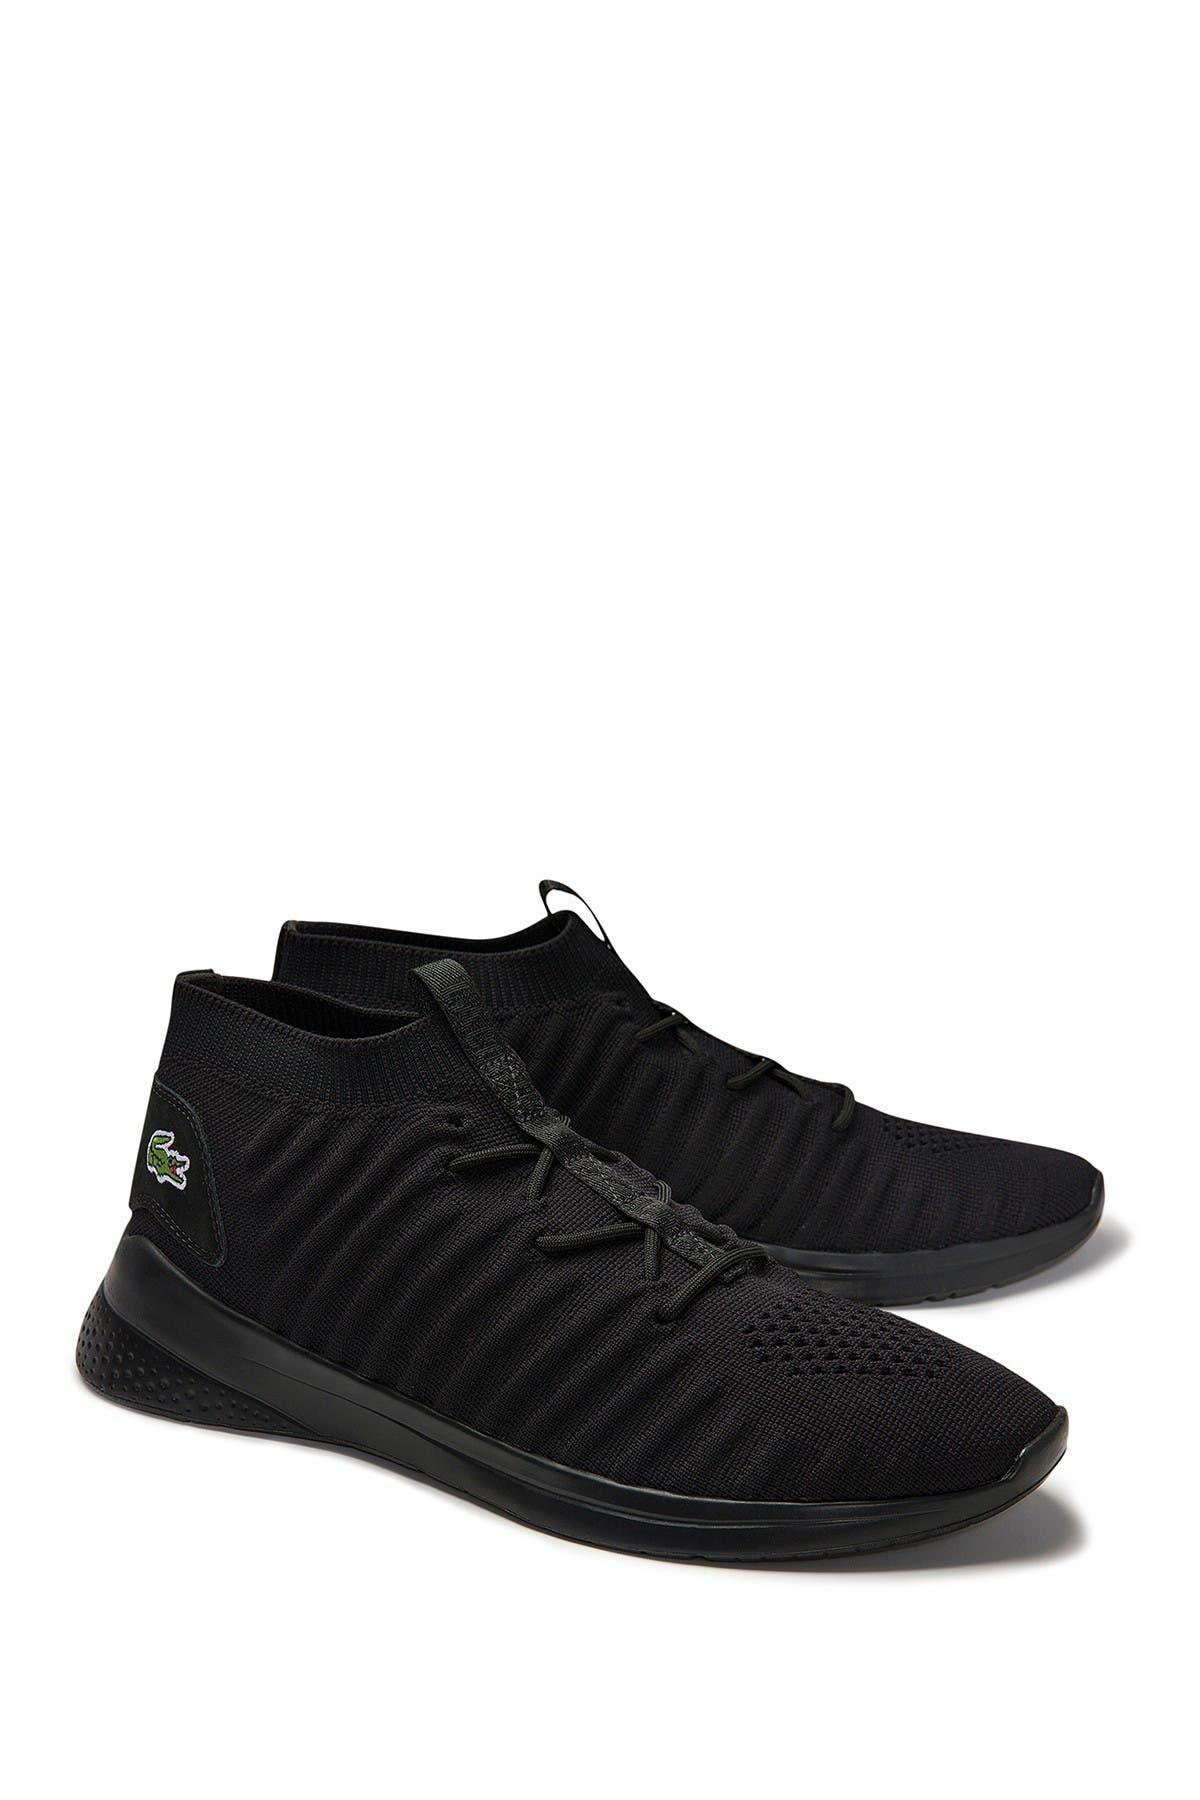 Lacoste Lt Fit-flex 319 Sneaker in Black/Black (Black) for Men - Lyst